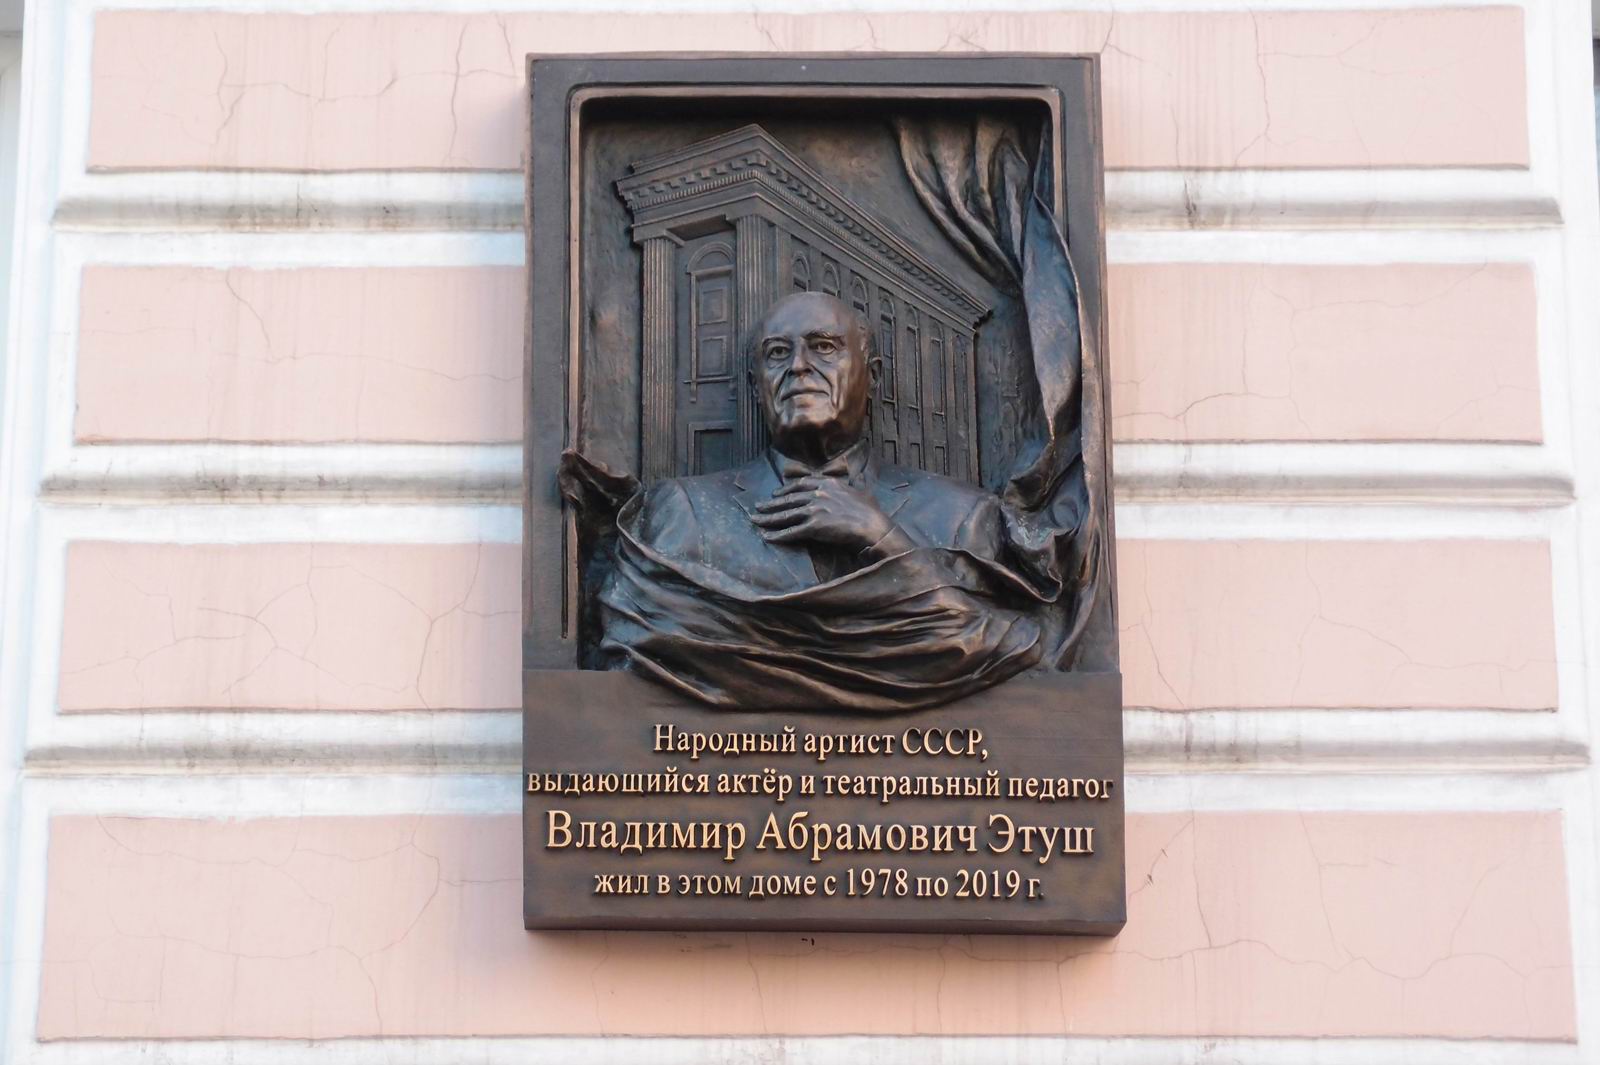 Мемориальная доска Этушу В.А. (1922–2019), ск. Ф.Трушин, в Гранатном переулке, дом 2/9 (со стороны Спиридоновки), открыта 13.11.2020.